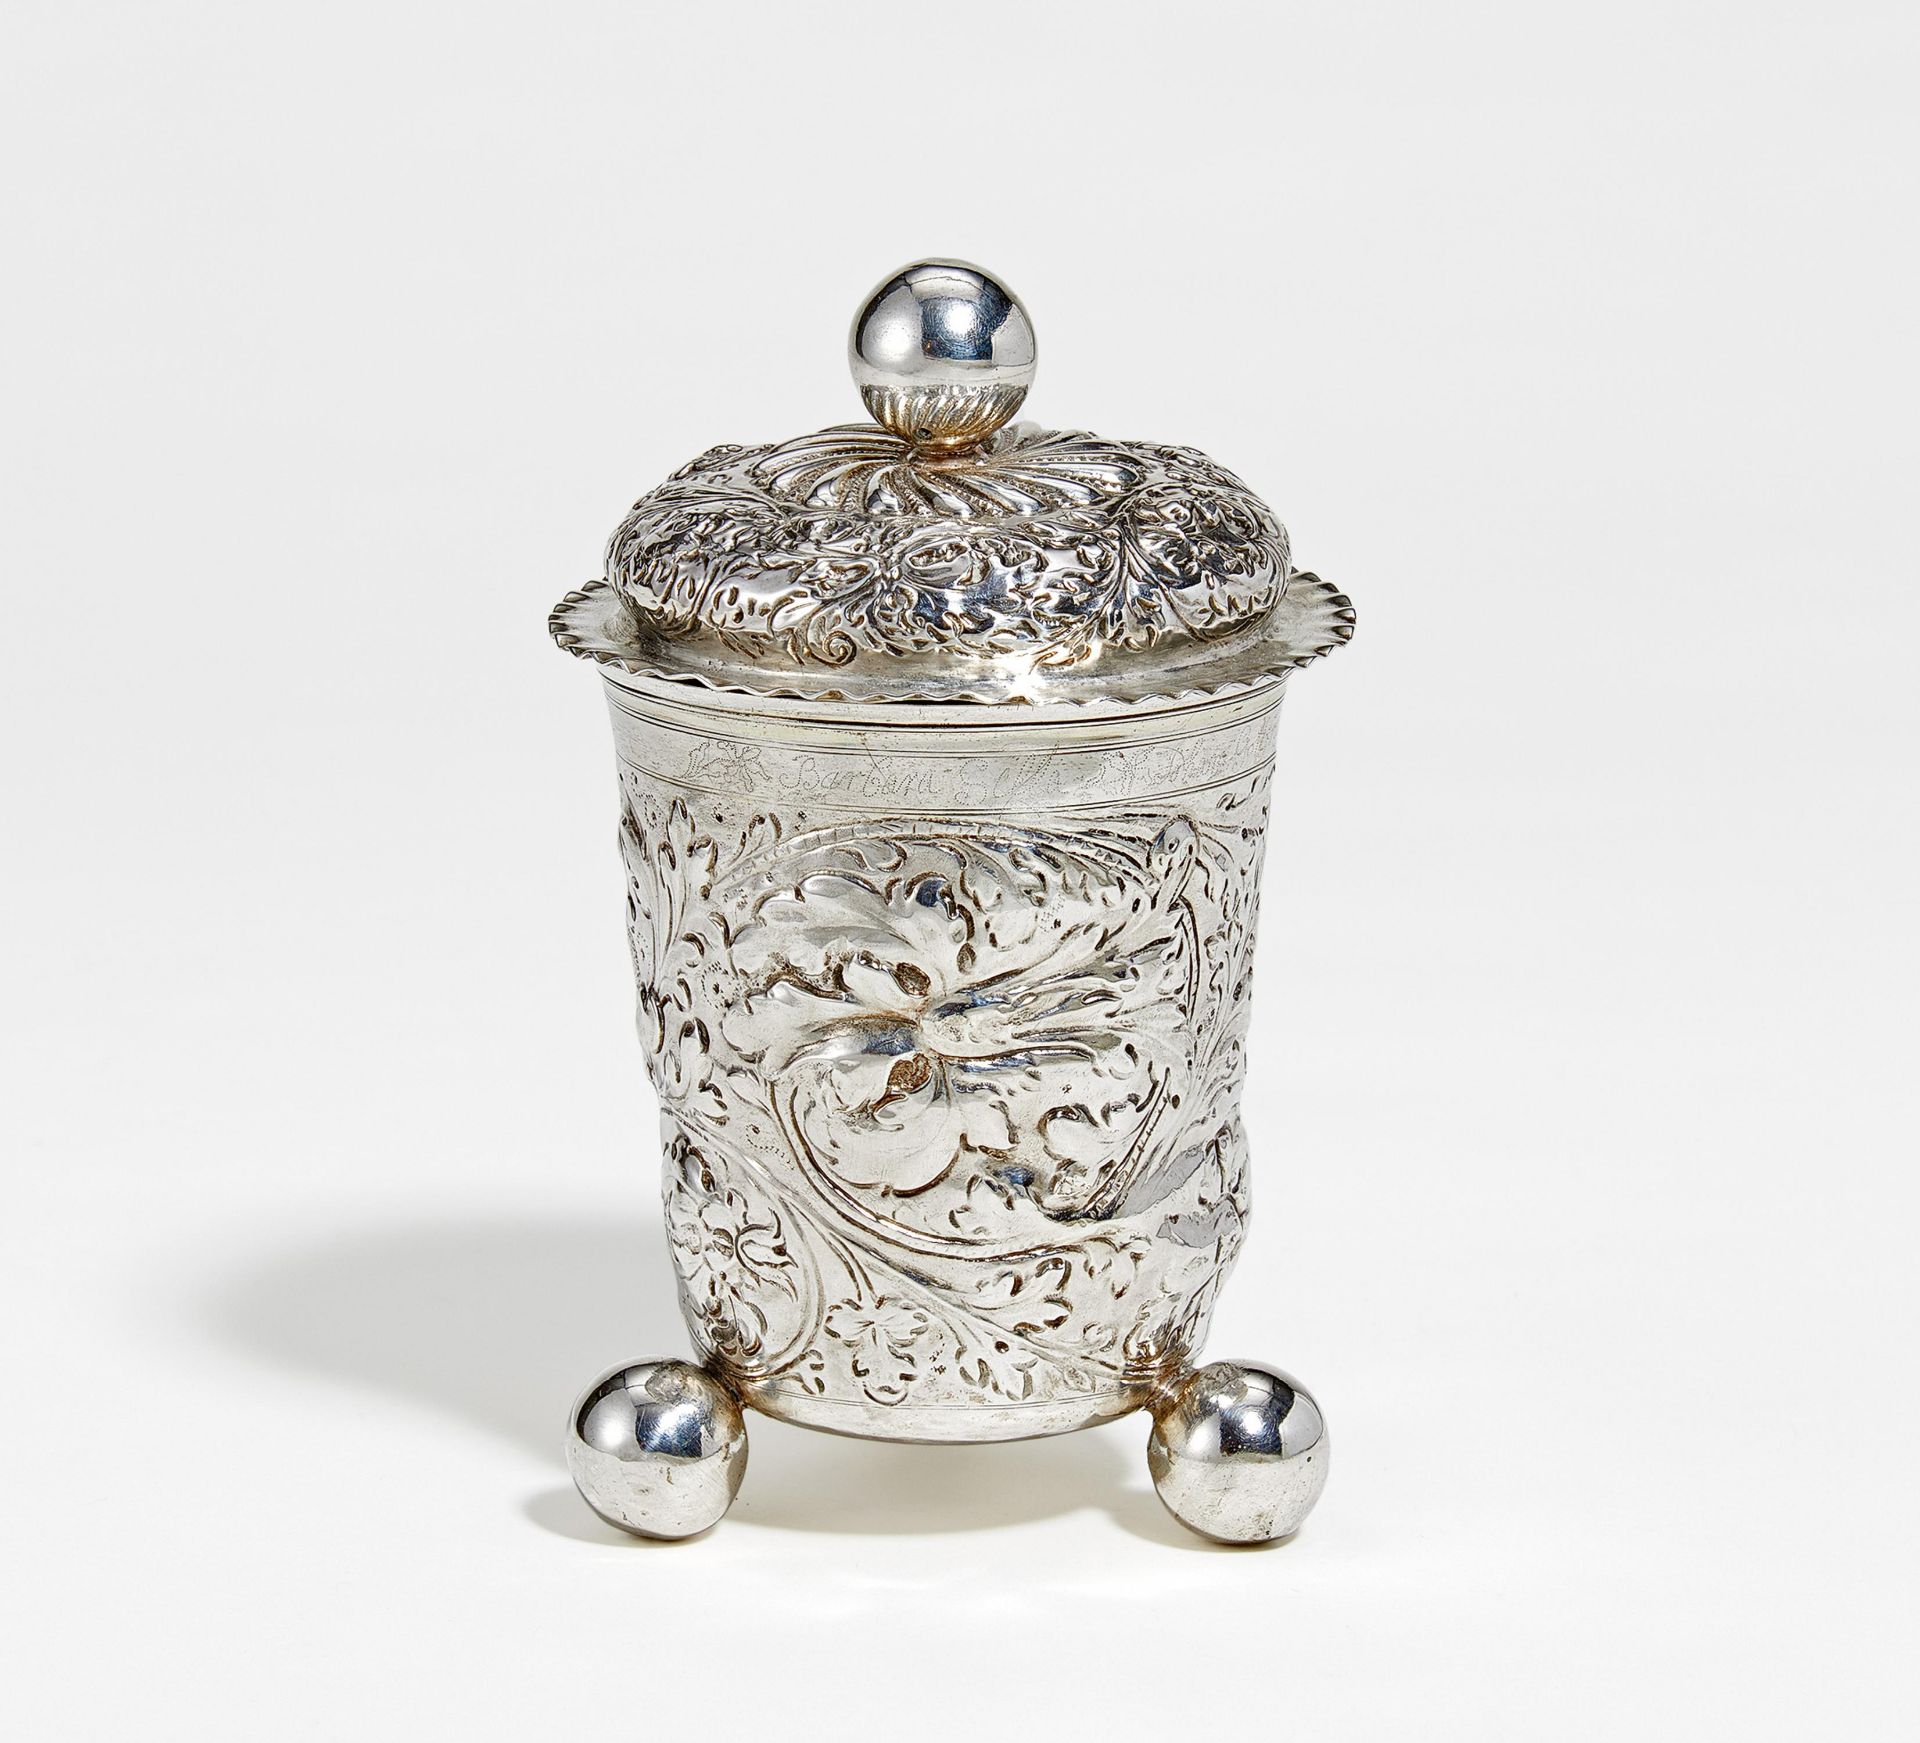 Lidded silver beaker with flower tendrils on spheric feet